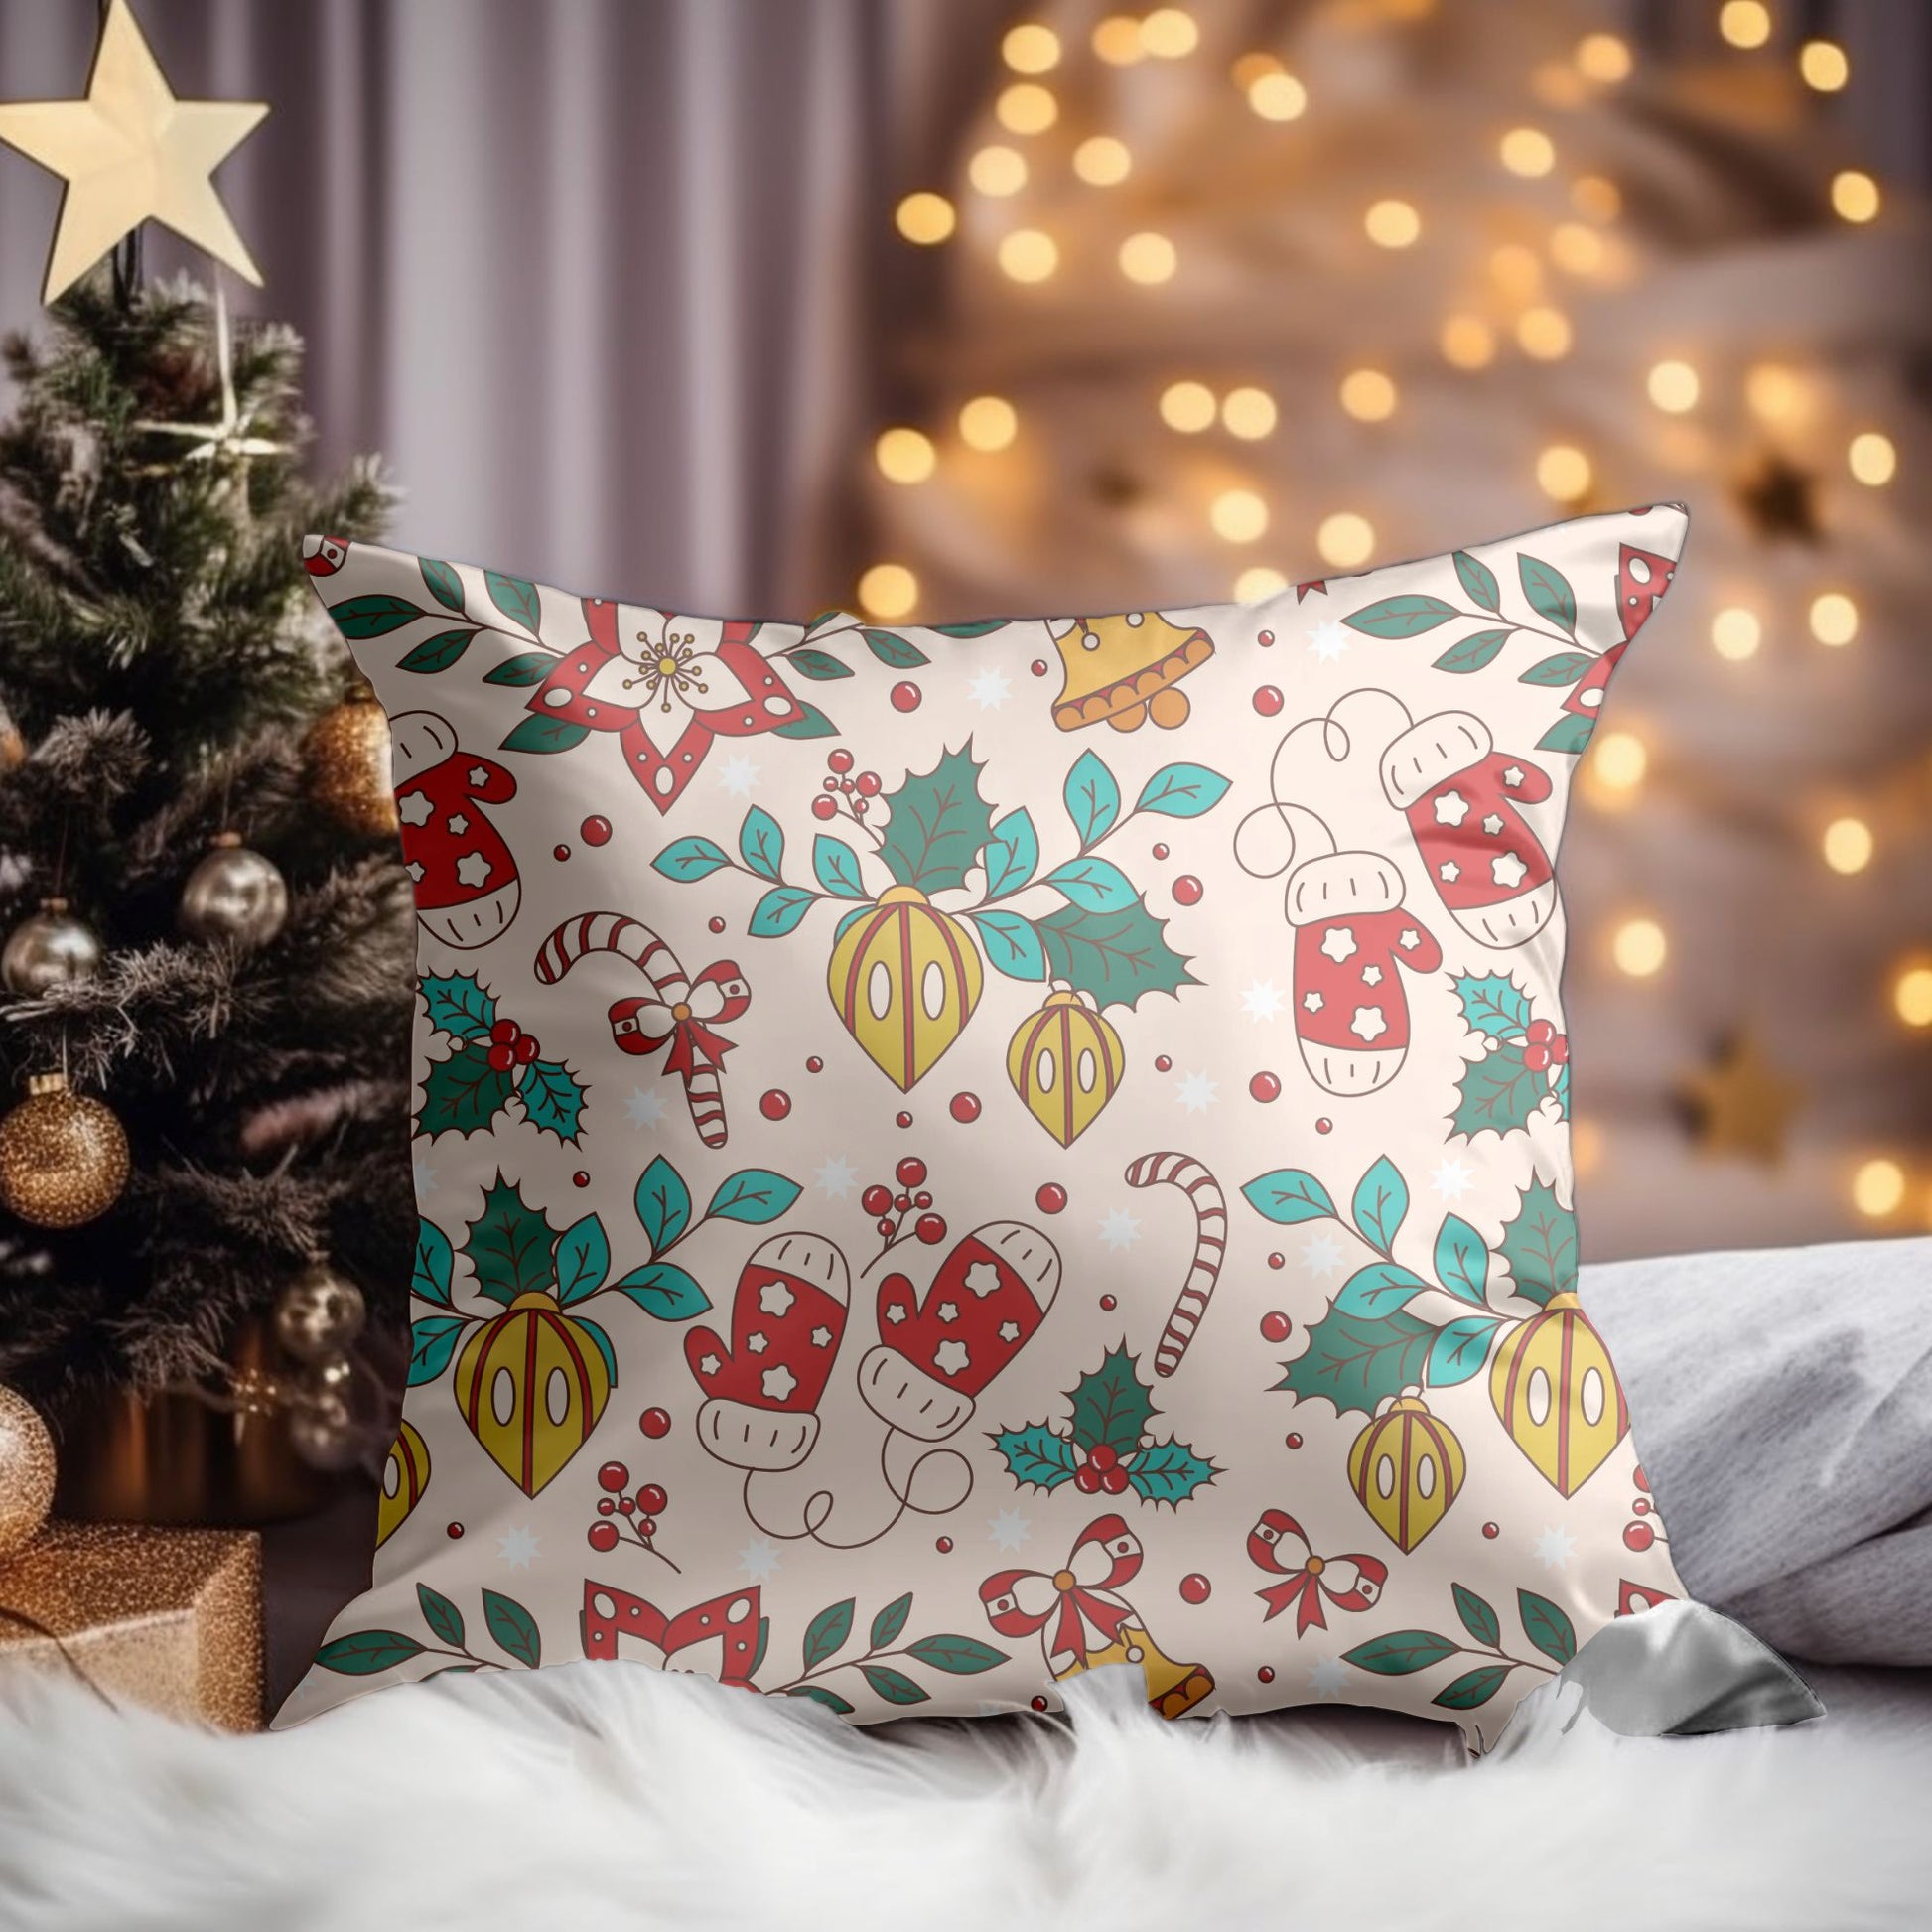 Detailed Close-up of Festive Holiday Joy Cushion